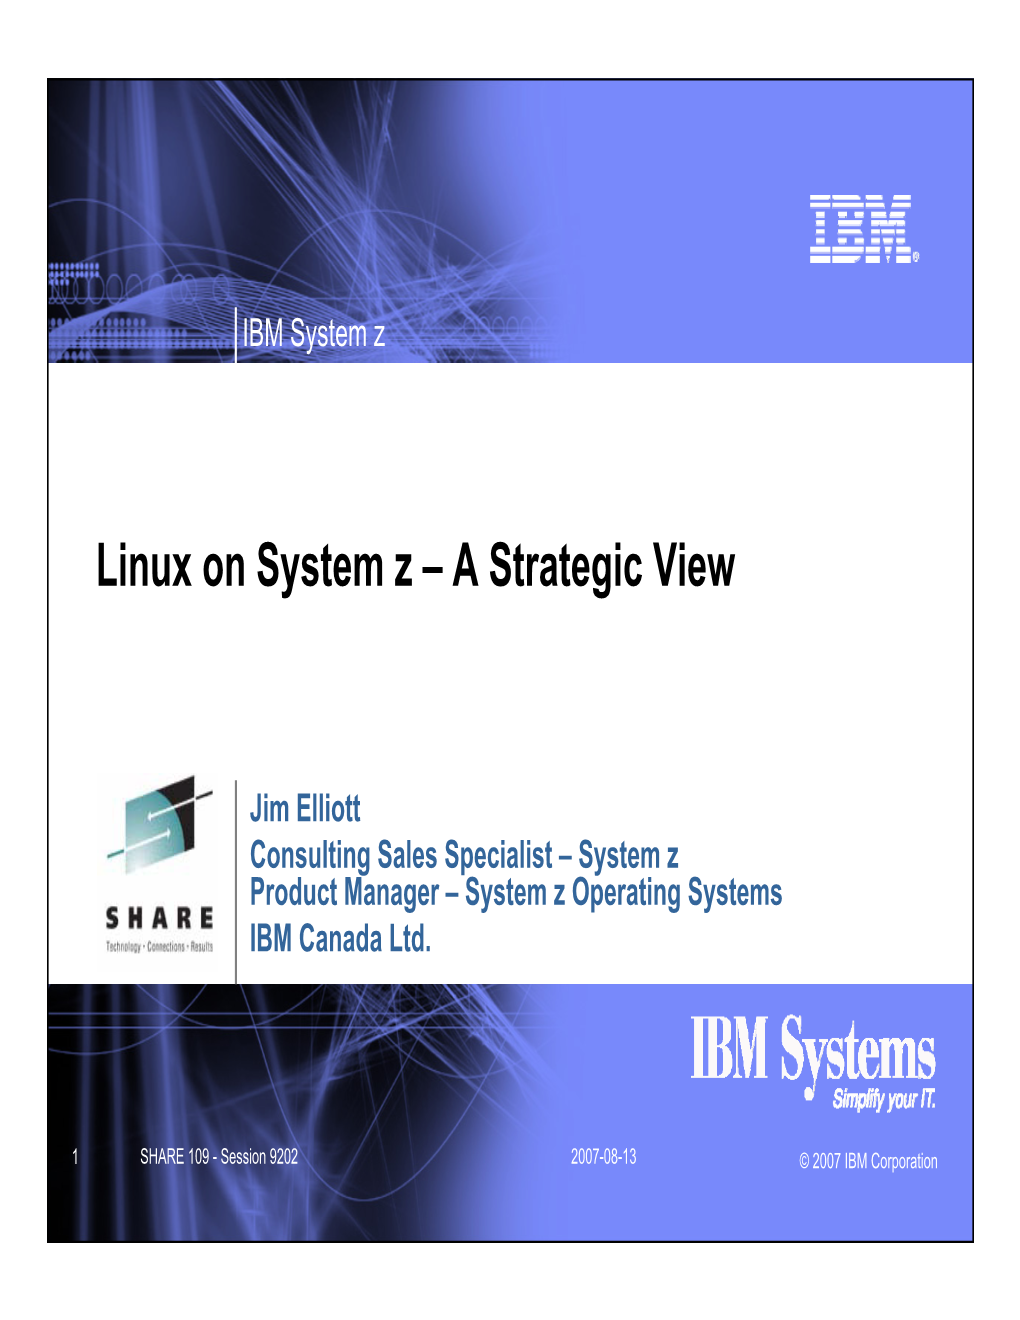 IBM System Z